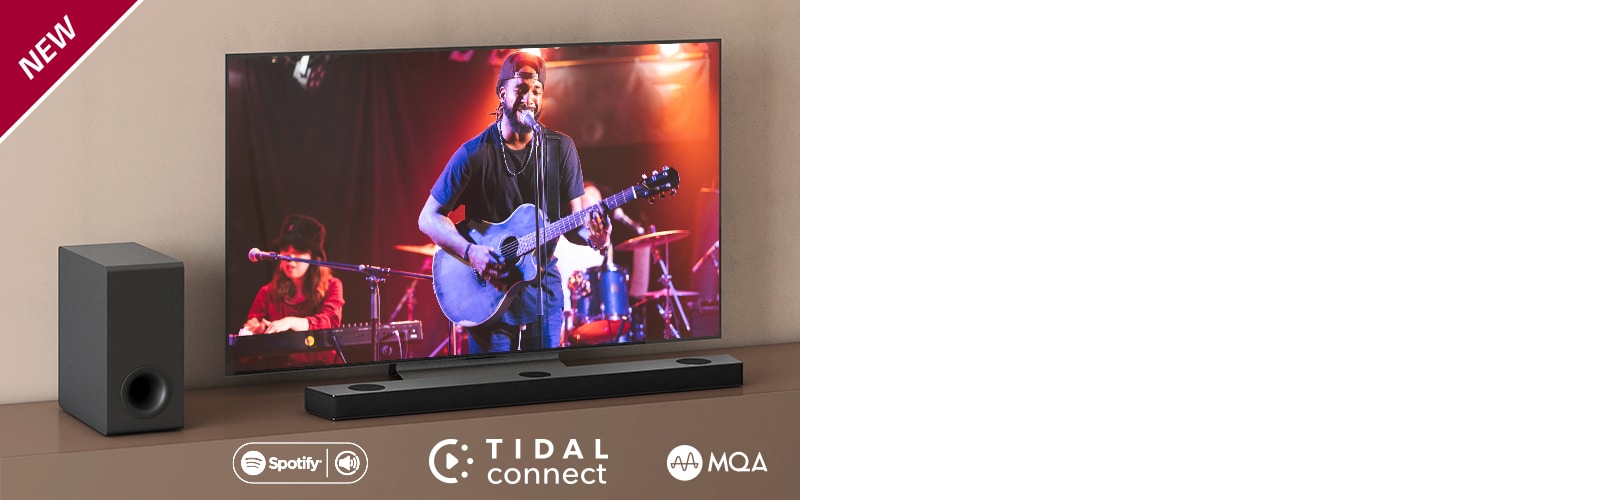 LG TV on asetettu ruskealle hyllylle, ja LG Sound Bar S75QR on asetettu TV:n eteen. Subwoofer on asetettu TV:n vasemmalle puolelle. Televisiossa näkyy konserttinäkymä. UUSI-merkki näkyy vasemmassa yläkulmassa.